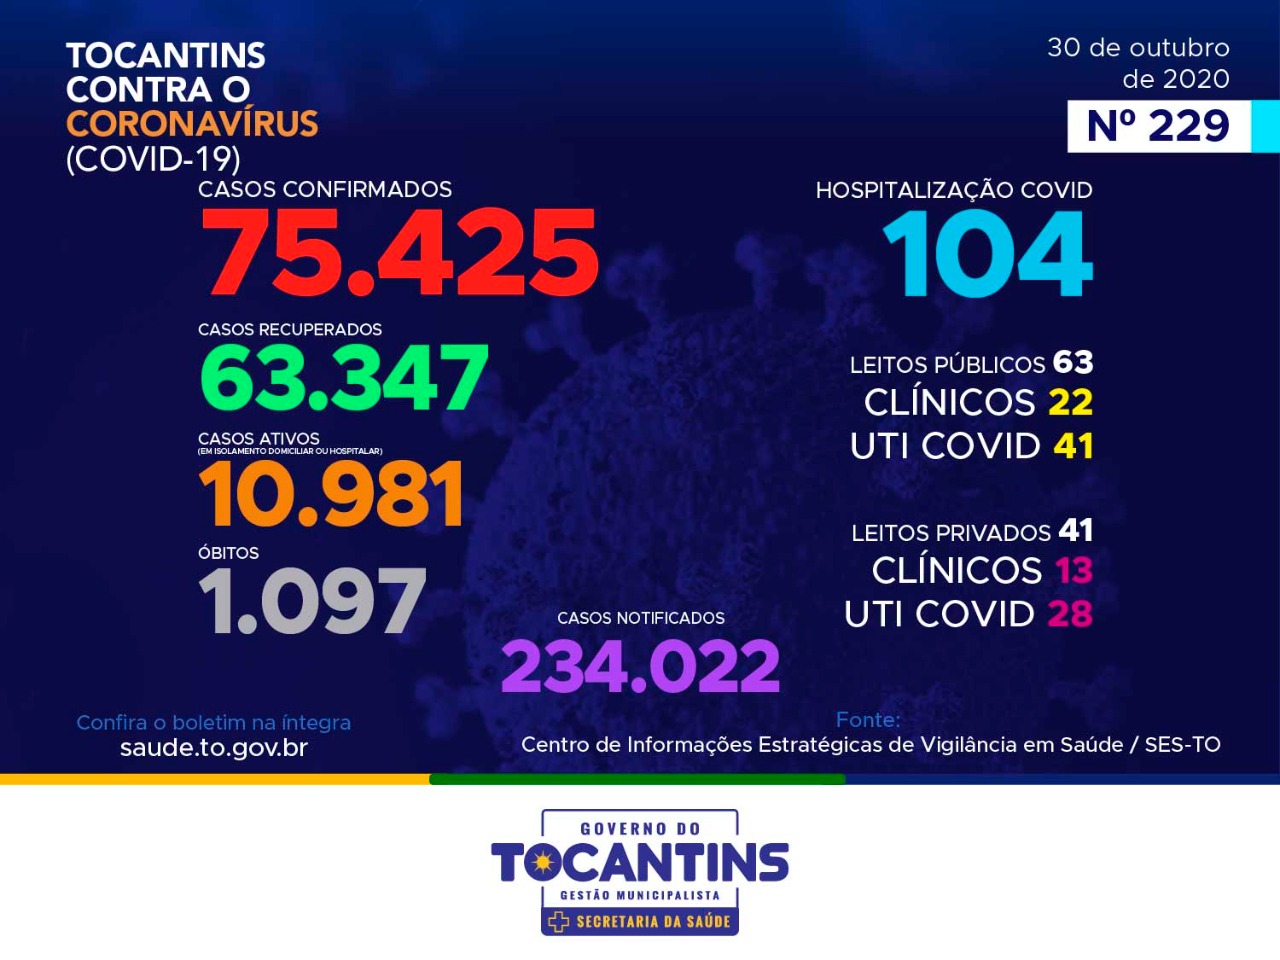 Coronavírus: Tocantins confirma mais 331 casos hoje, destes, 43% estão entre 20 a 39 anos